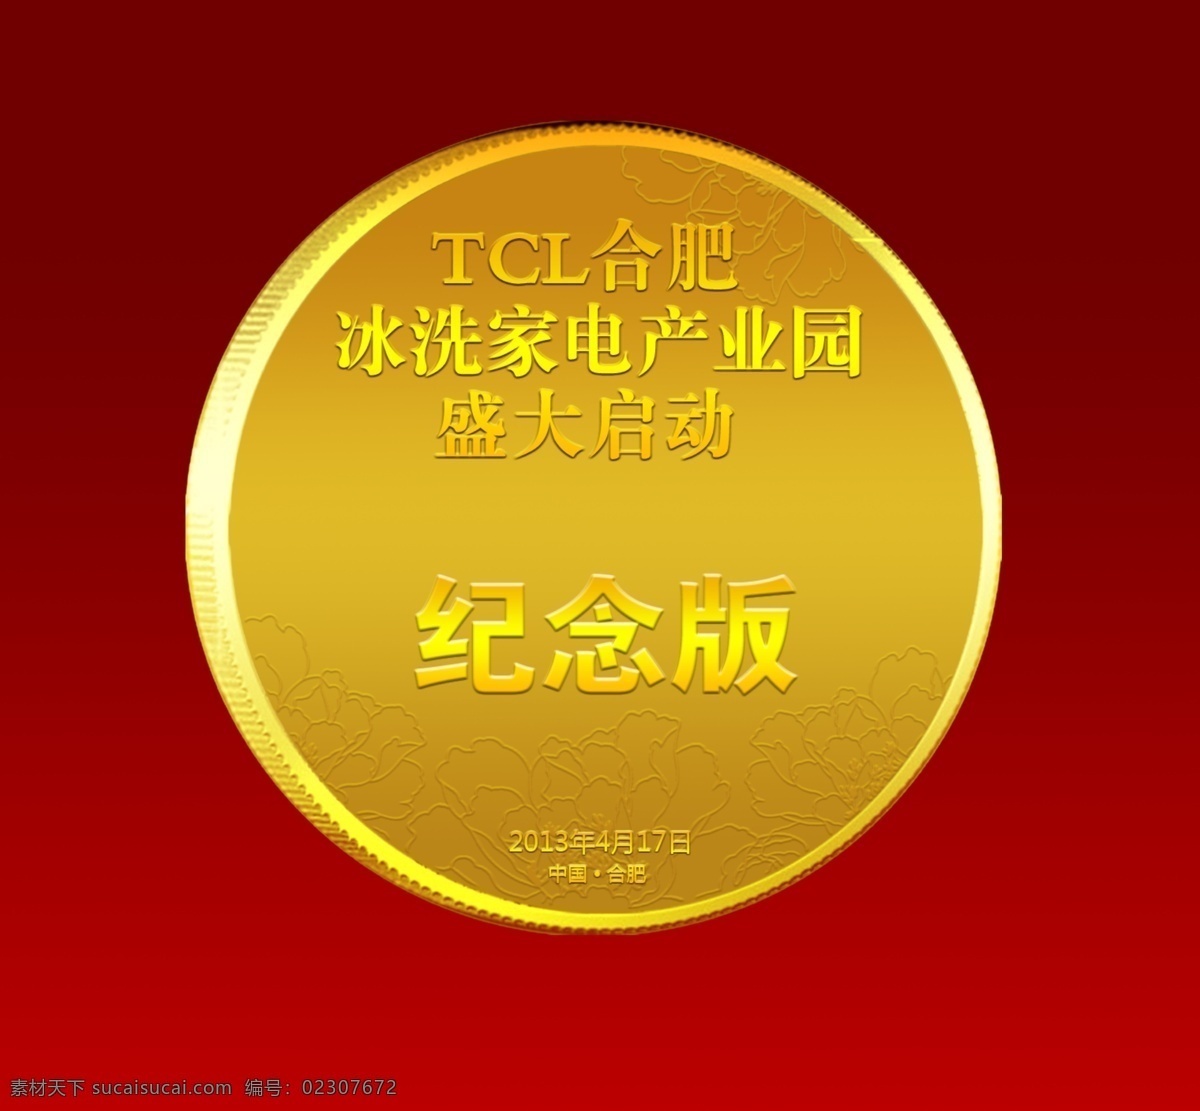 纪念币 tcl 圆 盛大启动 金黄 广告设计模板 源文件